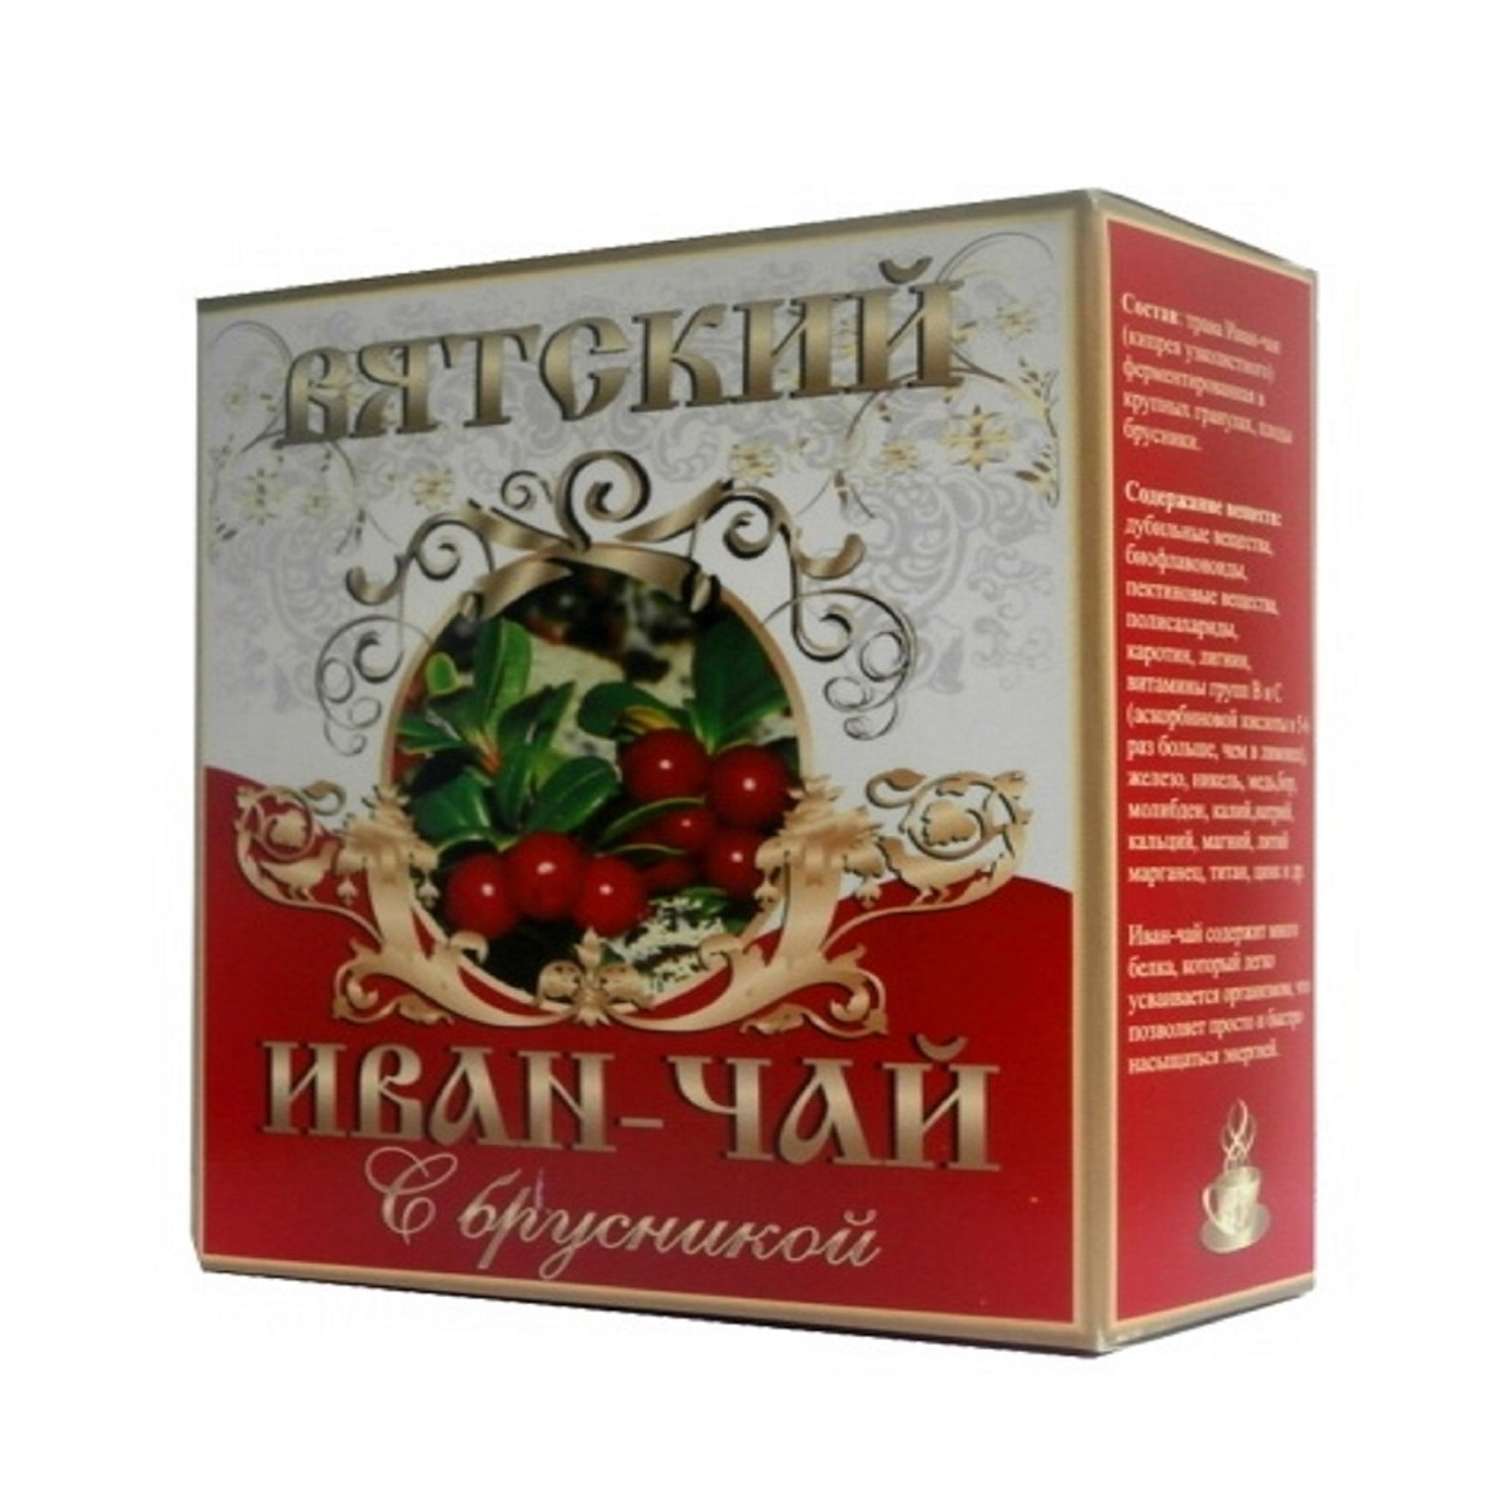 Чайный напиток Вятский Иван-чай с Брусникой 100 г - фото 1